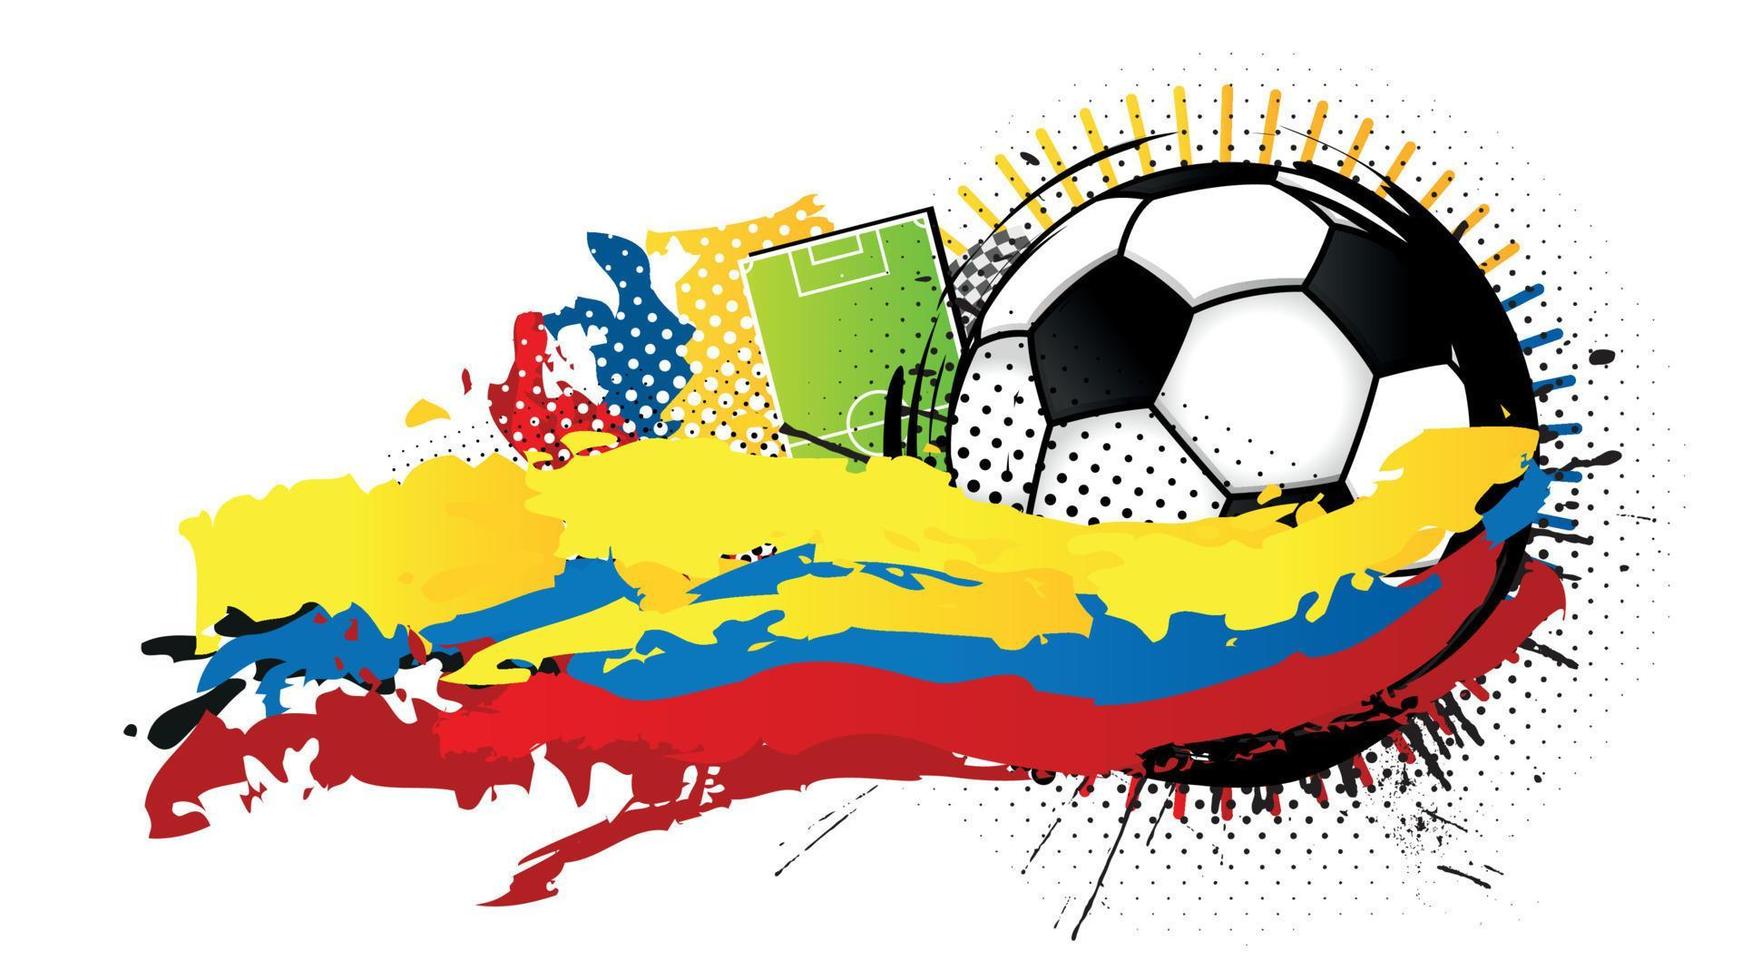 bola de futebol preta e branca cercada por manchas amarelas, azuis e vermelhas formando a bandeira do equador com um campo de futebol ao fundo. imagem vetorial vetor